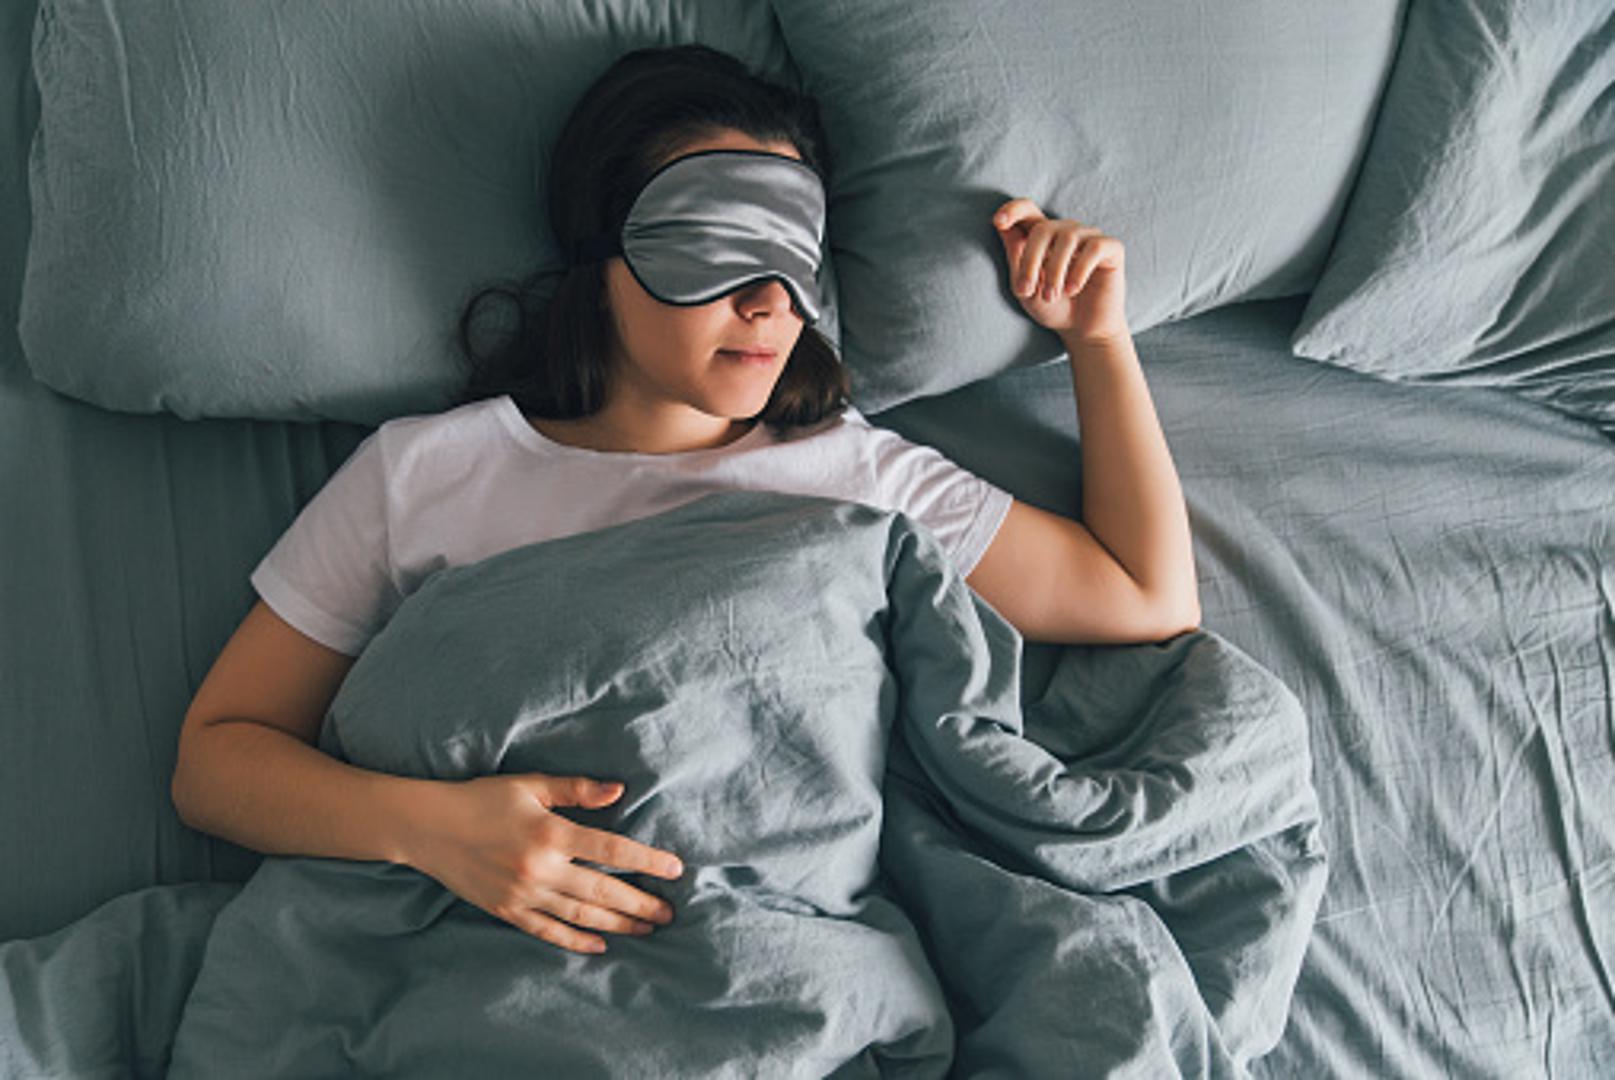 Imate svoju omiljenu pozu za spavanje? Ako ste se ikada zapitali ima li kakve poveznice sa zdravljem položaj u kojem obično spavate, imamo odgovor. Prema ayurvedi, nije svejedno u kojem položaju spavate i postoji onaj koji je najzdraviji.
